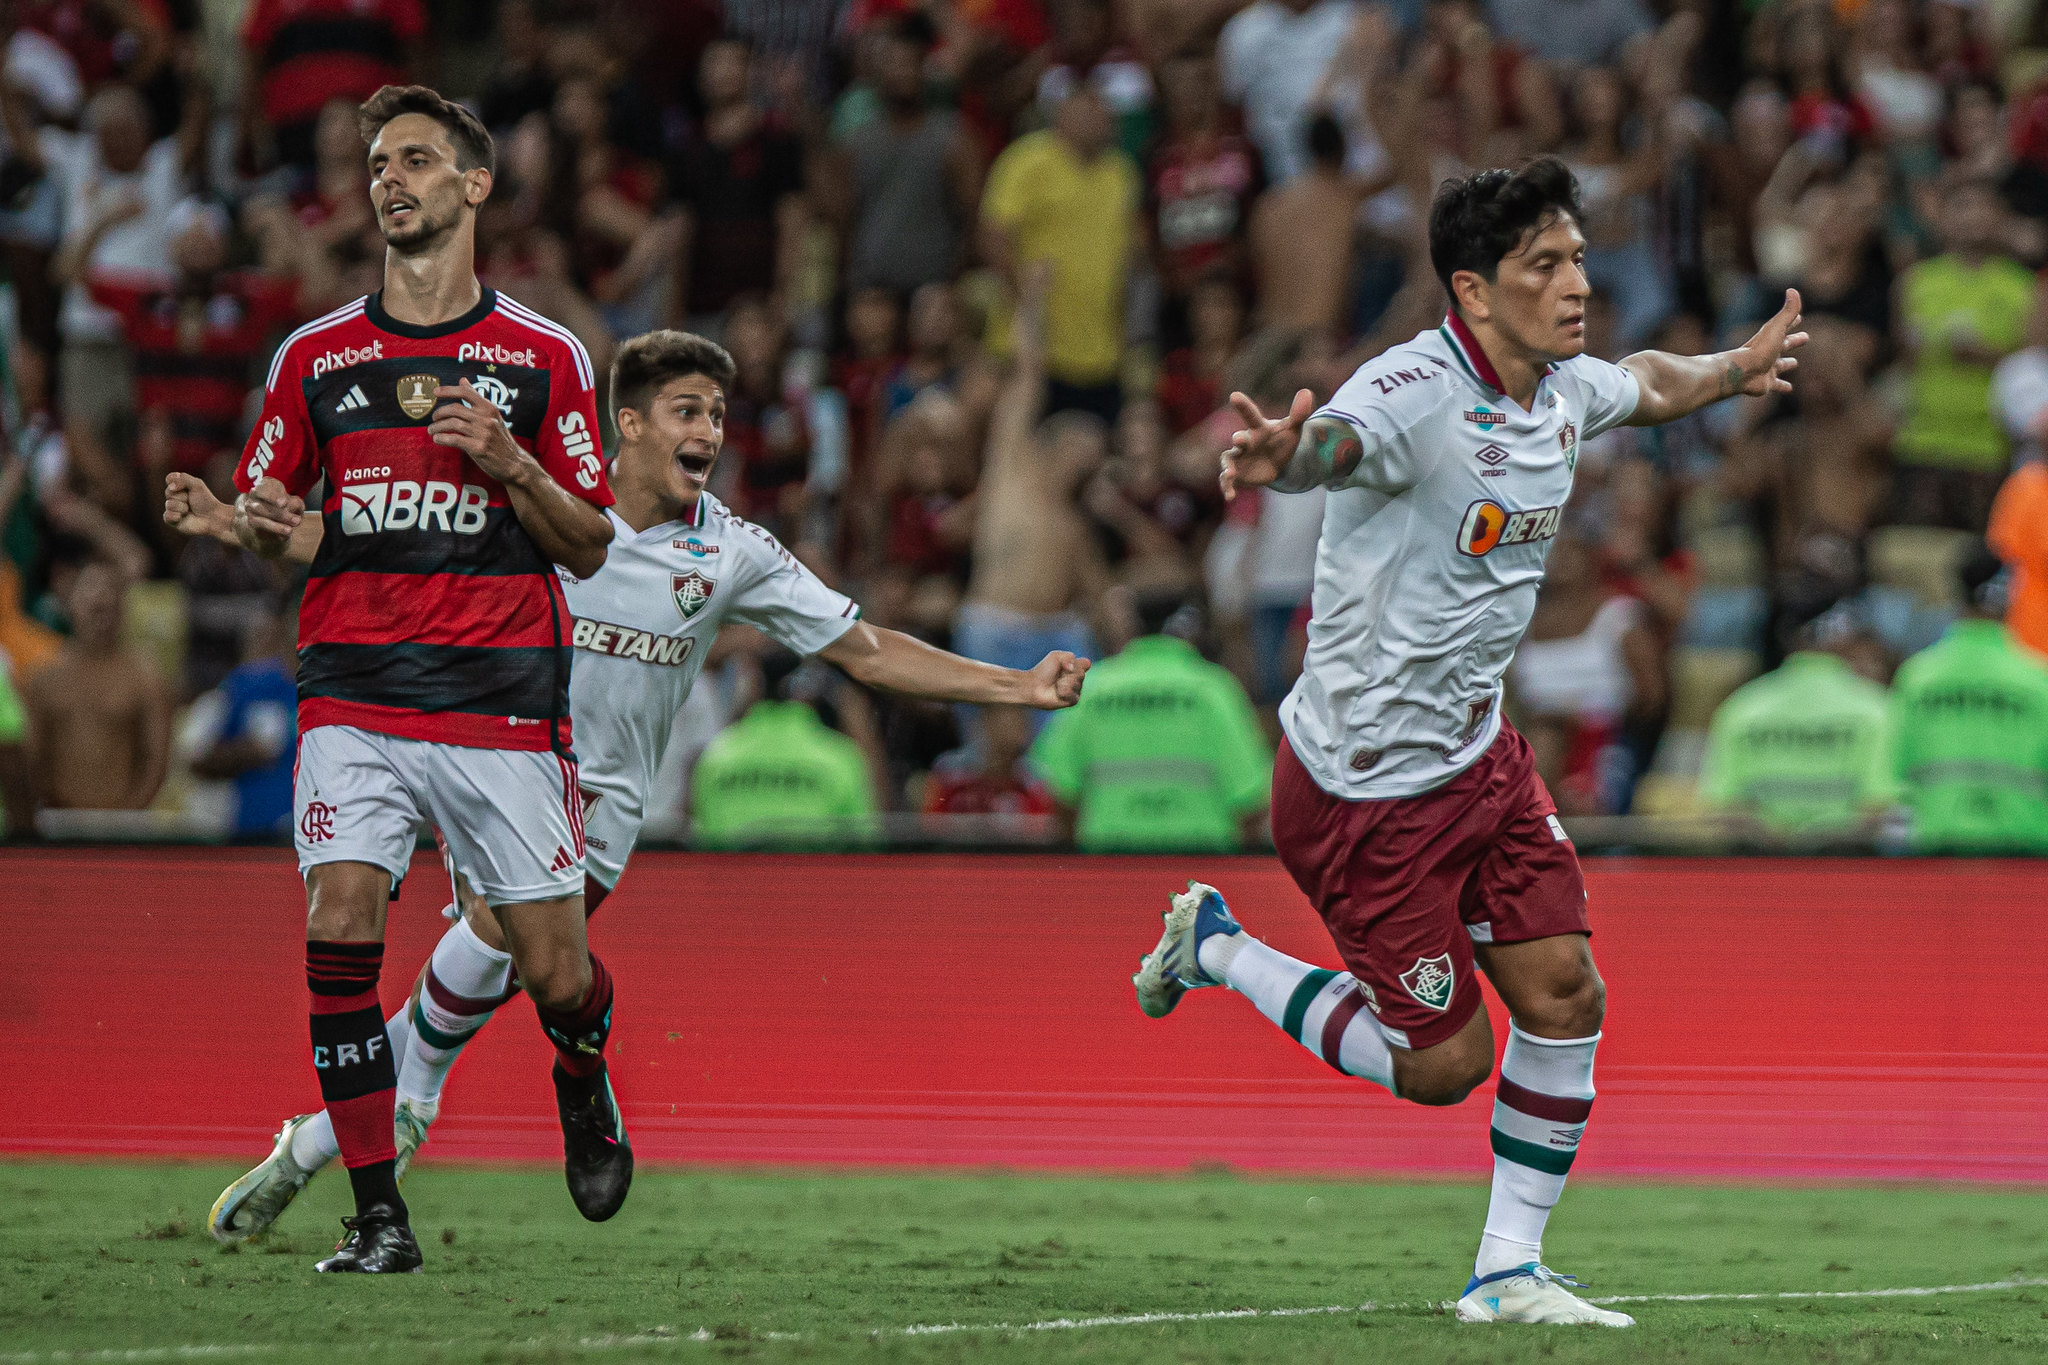 A final do @cariocao é na - Clube de Regatas do Flamengo